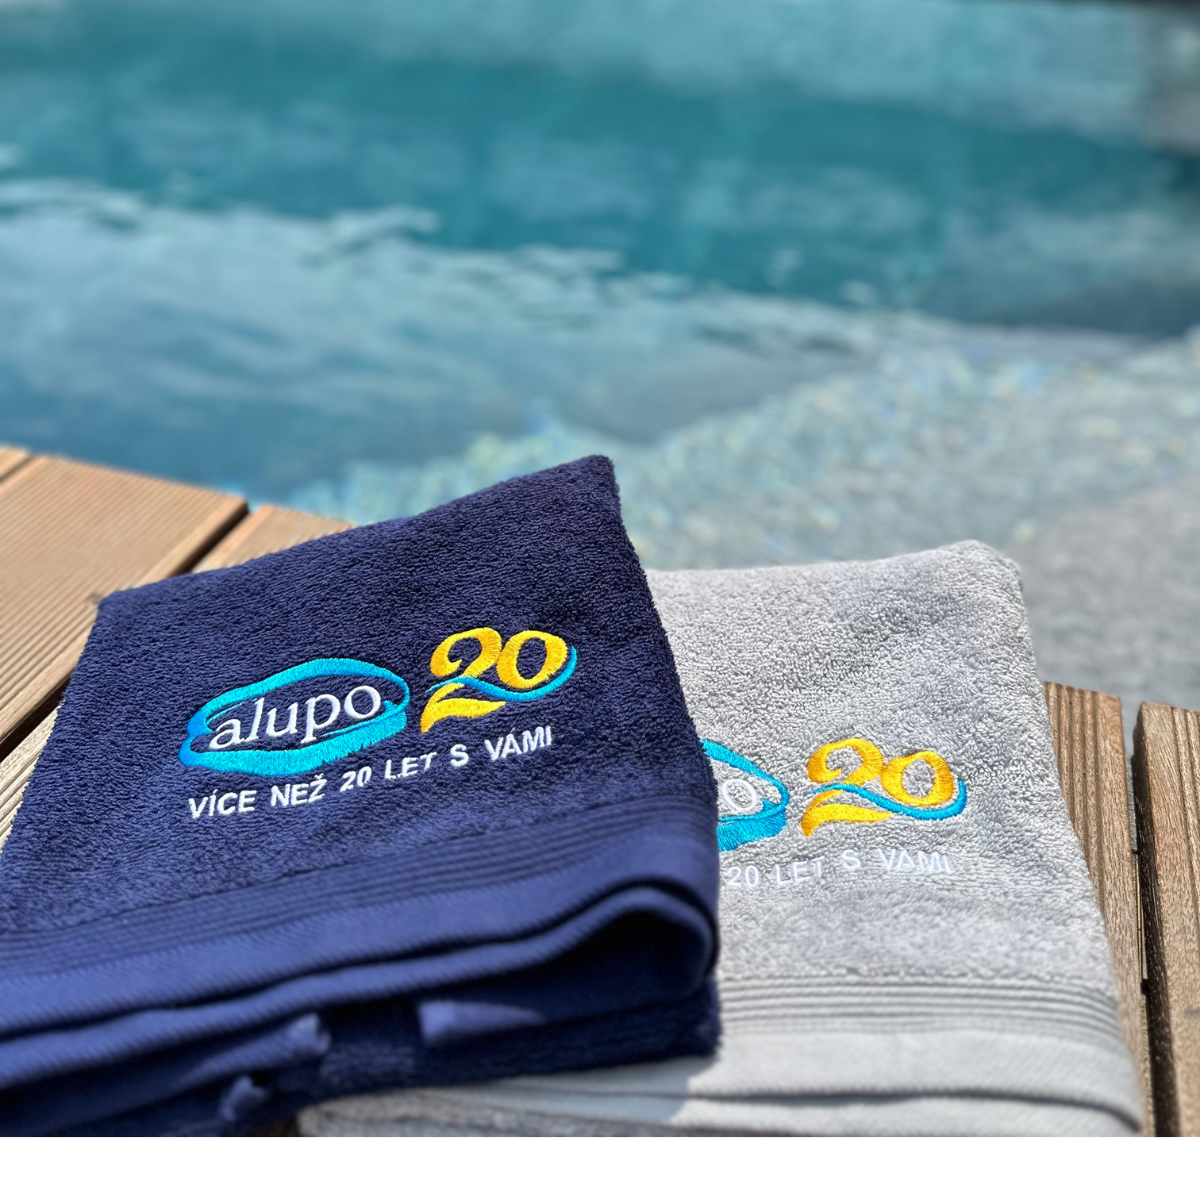 vyšívání loga na ručníky k výročí firmy Alupo - firemní merch